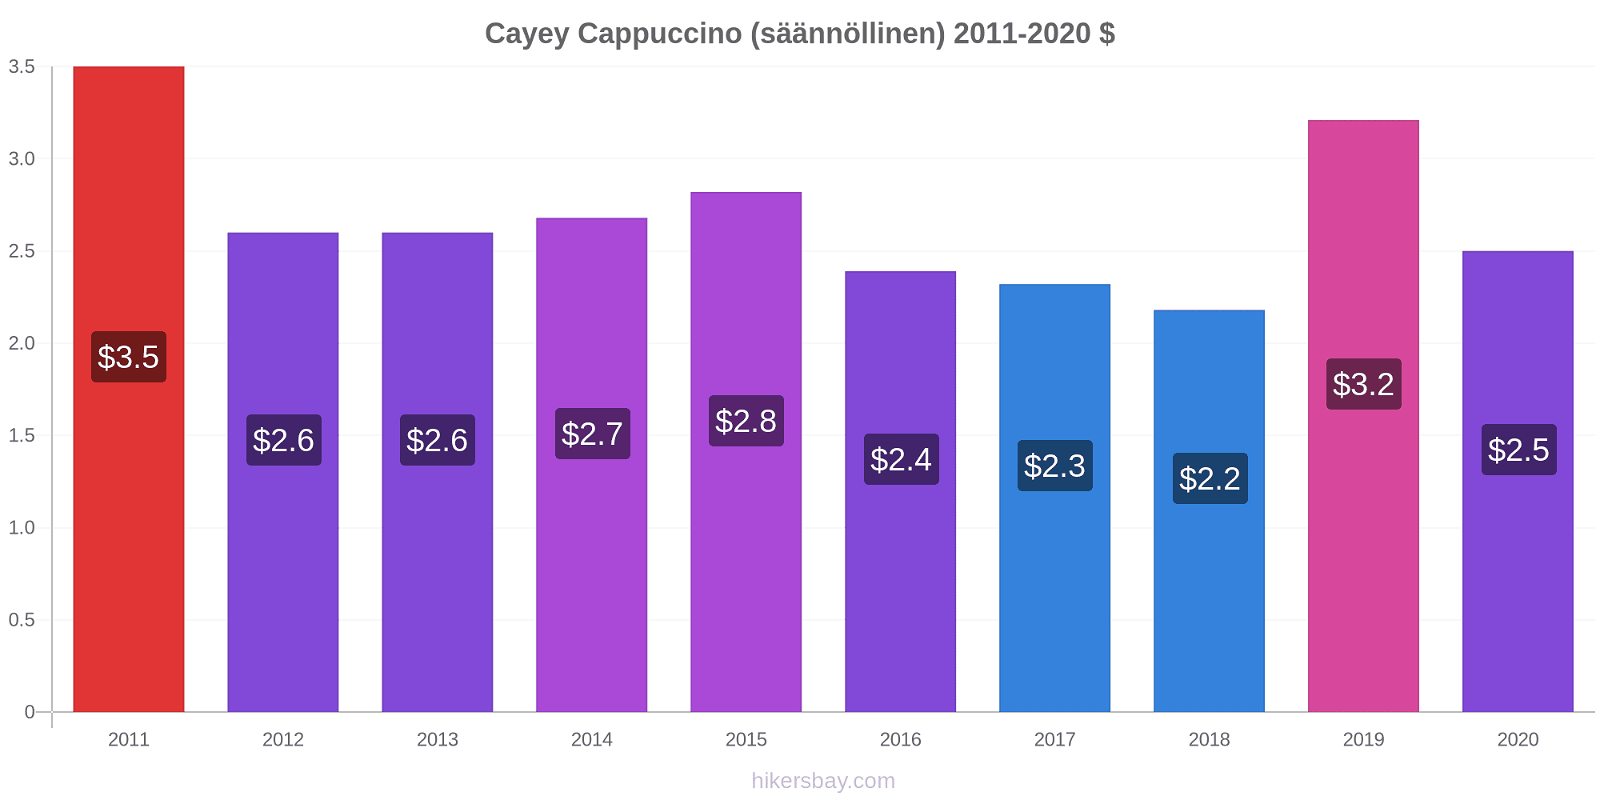 Cayey hintojen muutokset Cappuccino (säännöllinen) hikersbay.com